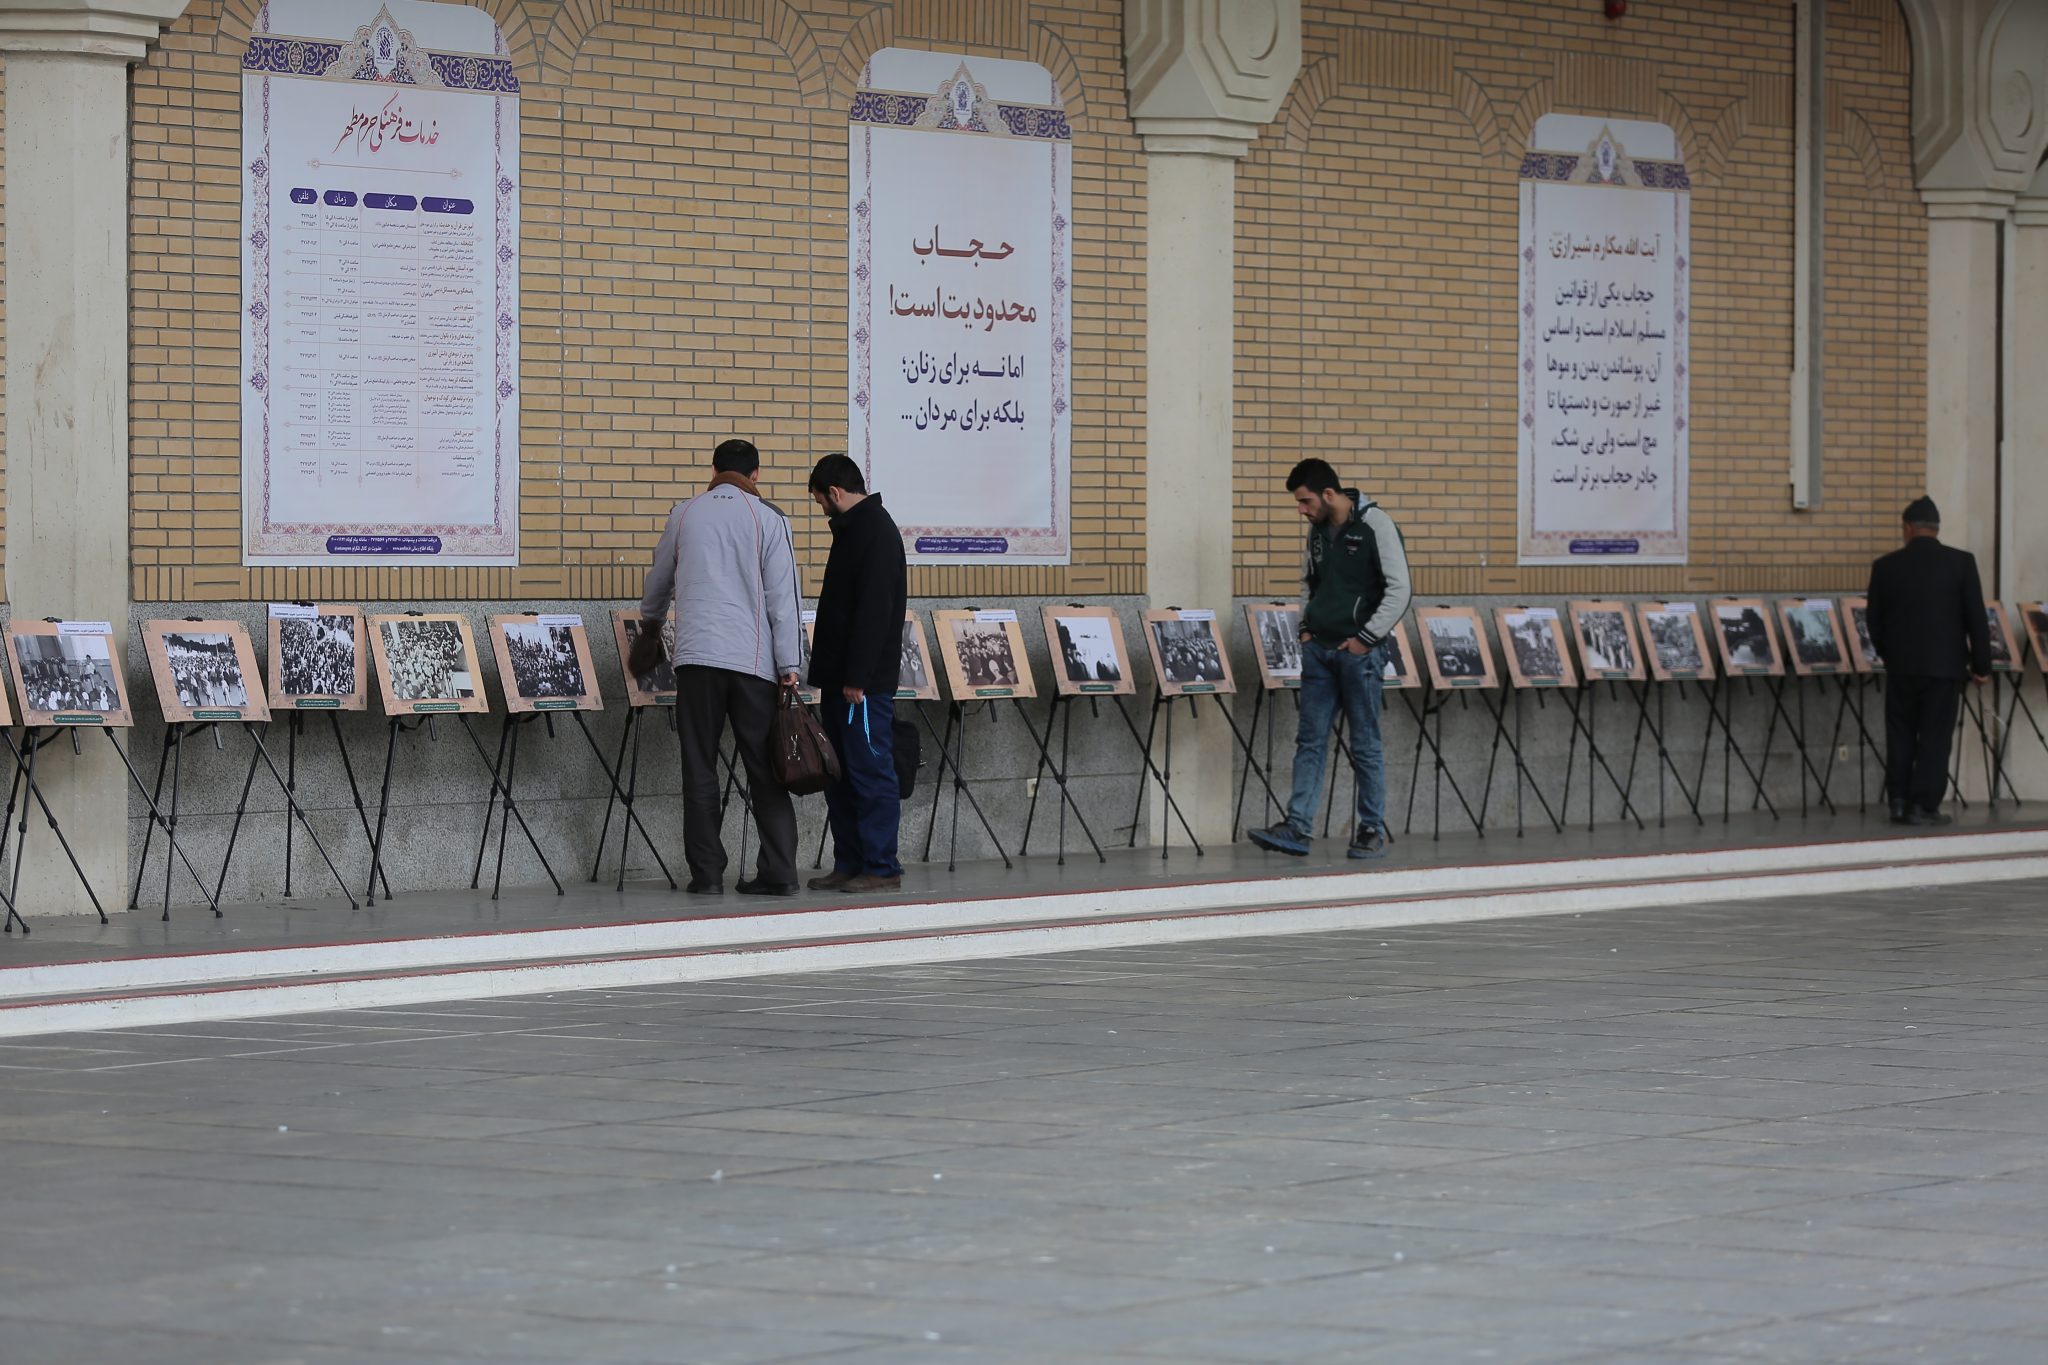 تصاویر نمایشگاه «حرم، امام، انقلاب» در صحن صاحب الزمان(عج)